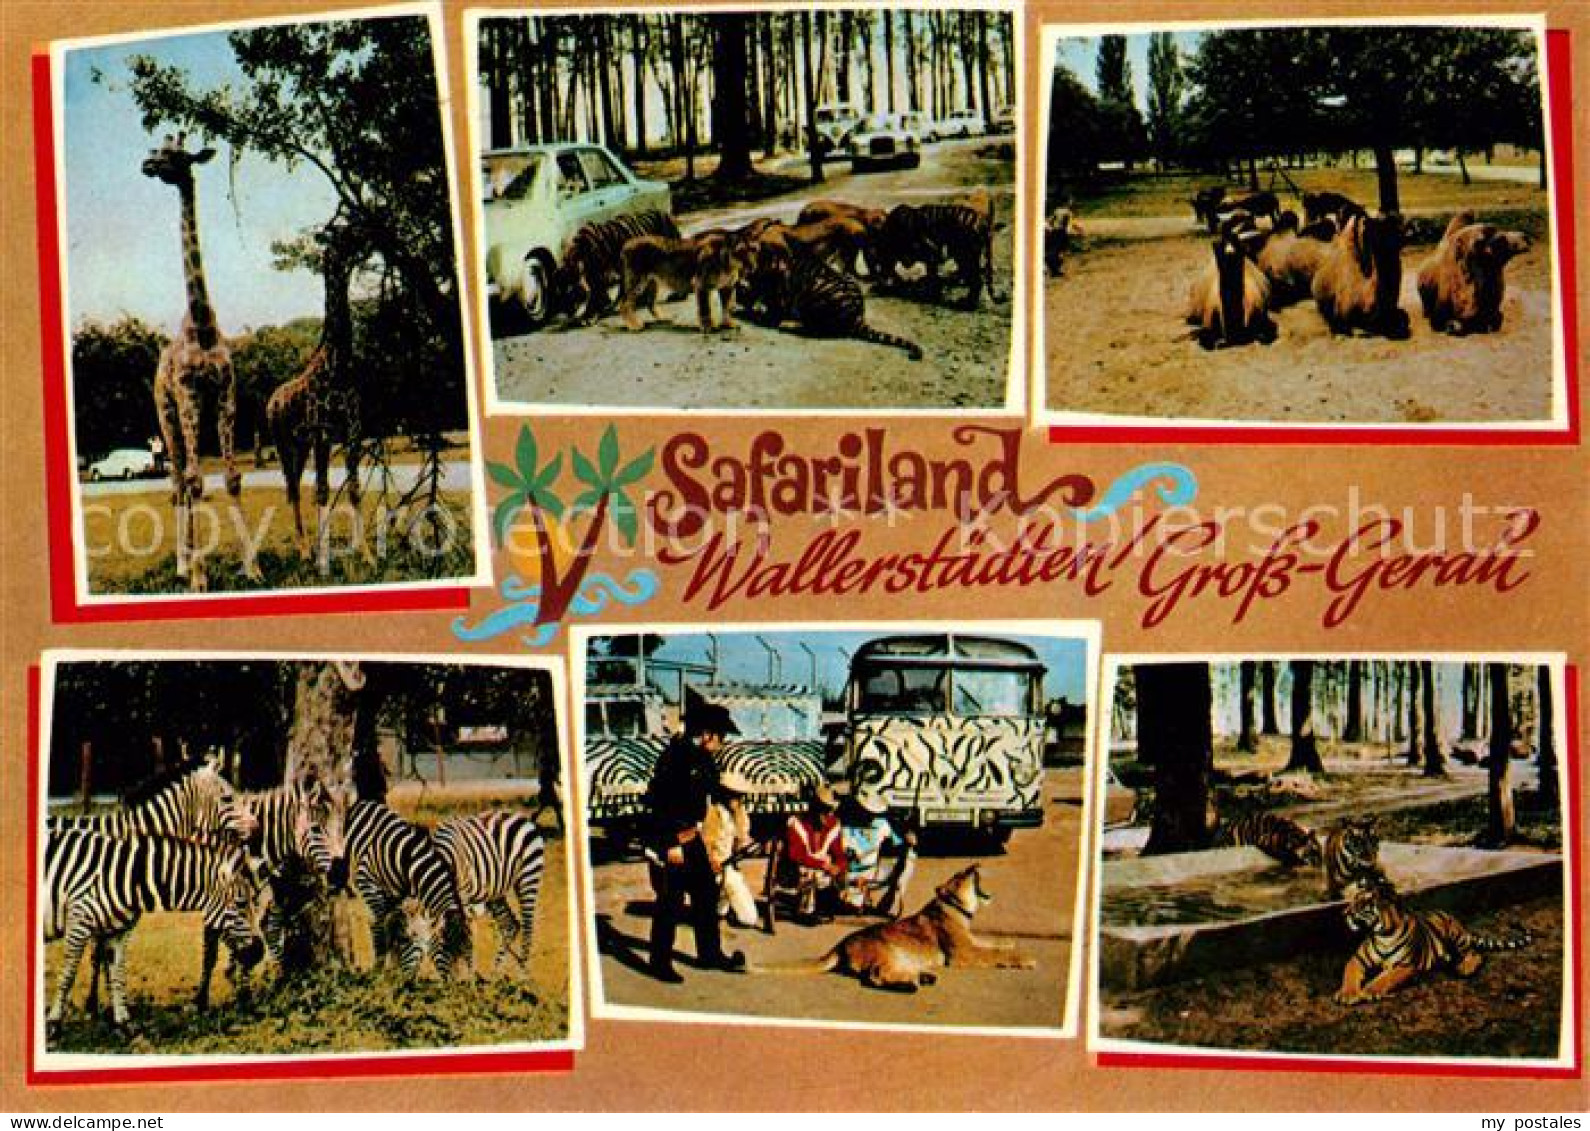 73157835 Wallerstaedten Safariland Tiere Wallerstaedten - Gross-Gerau